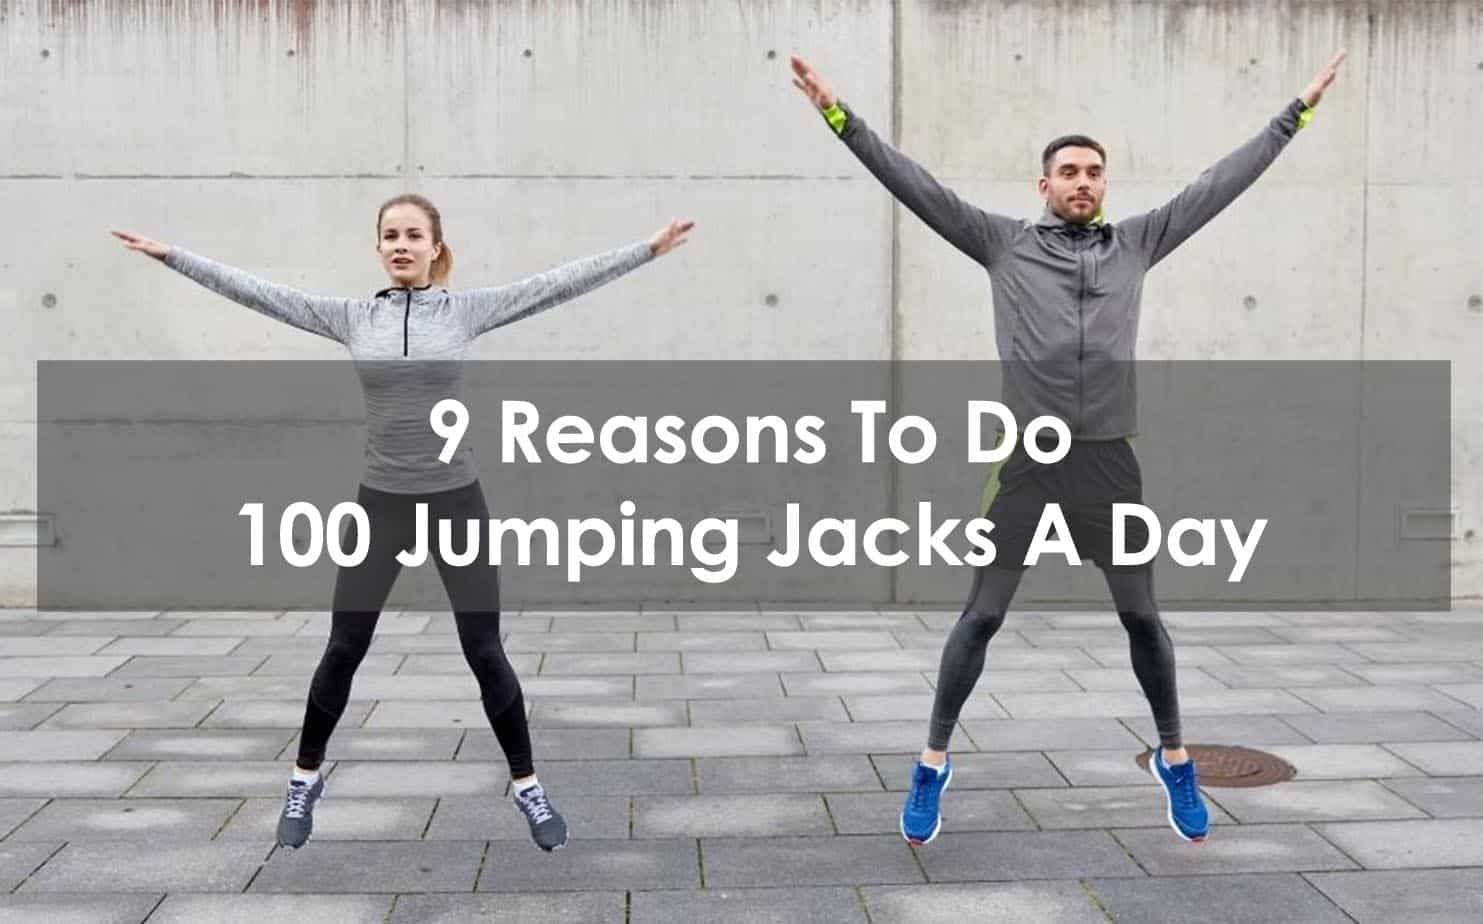 Jumping jacks